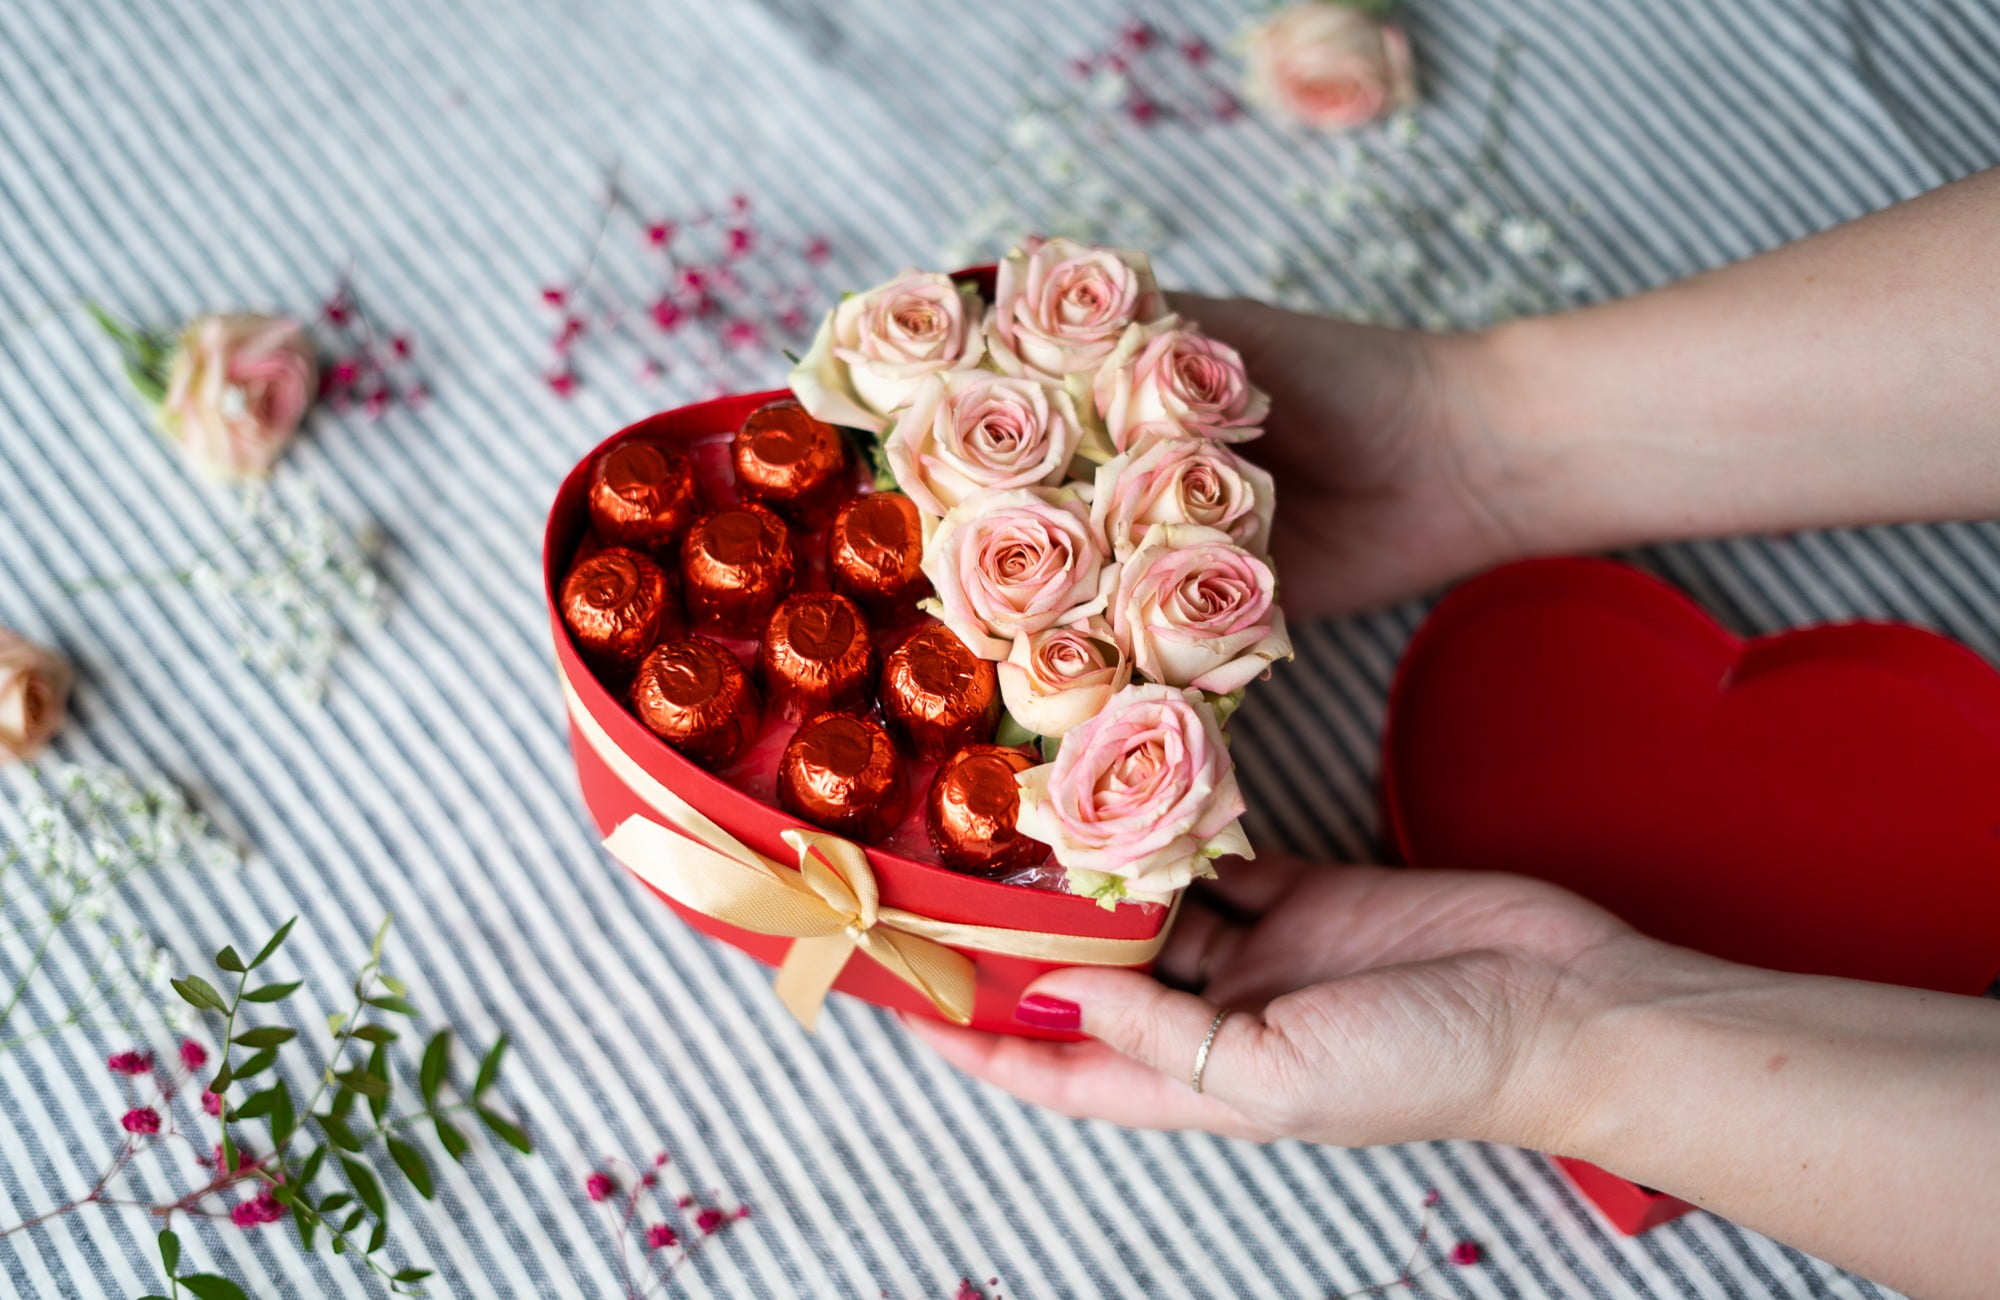 Czekoladki i kwiaty w kształcie serca – oryginalny prezent dla mamy.